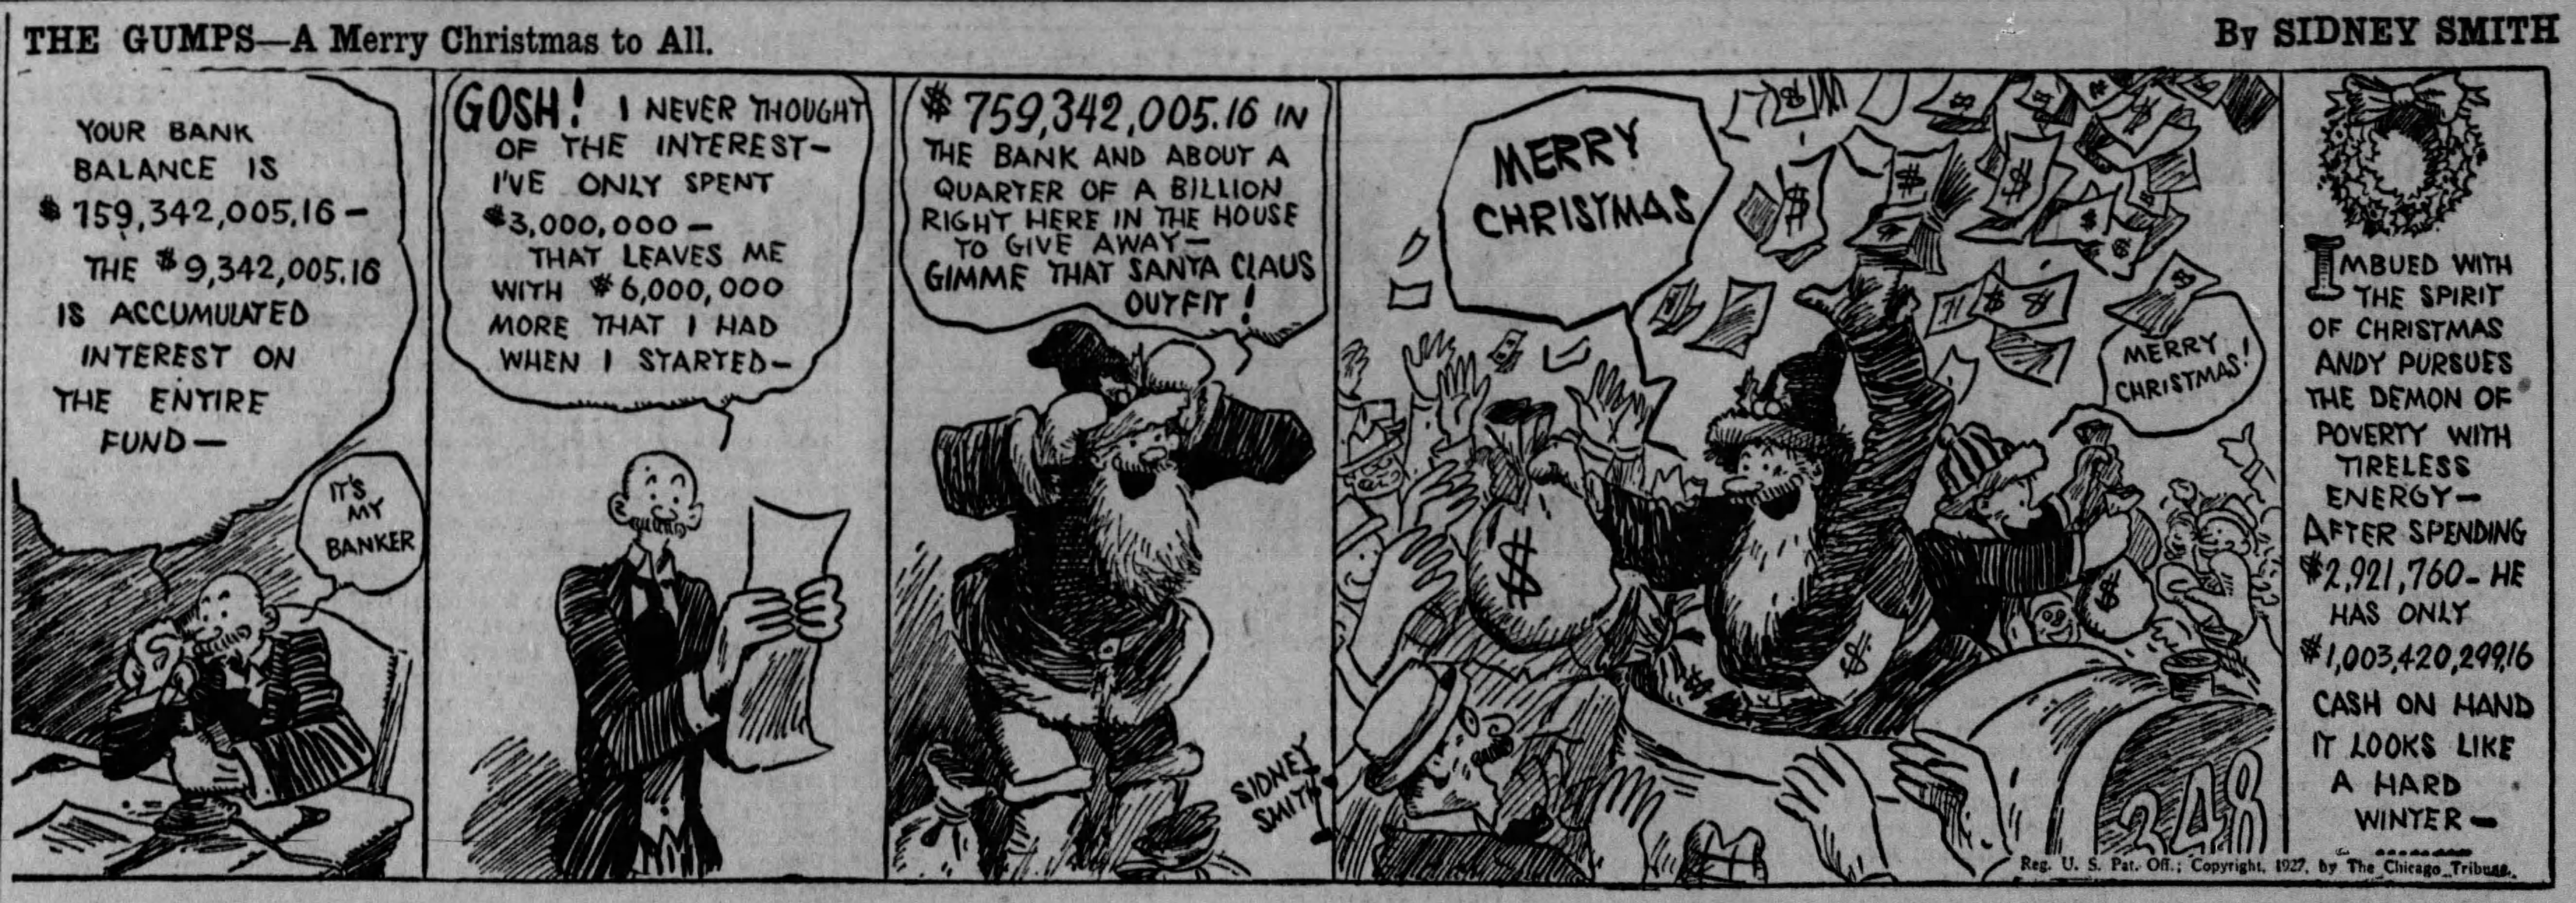 The Gumps, December 24, 1927